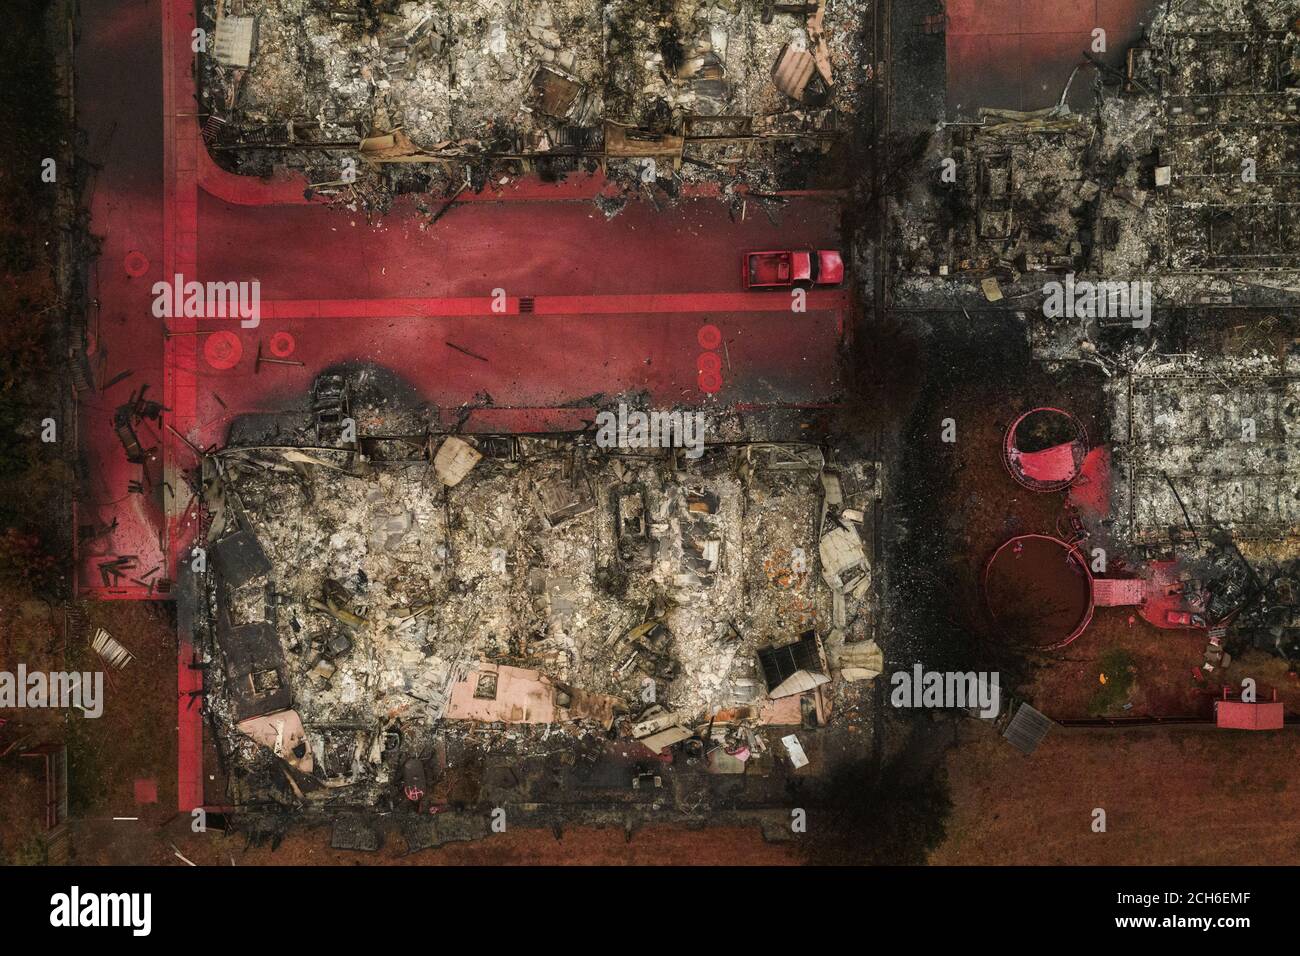 Coperte ignifughe rosse bruciarono abitazioni e veicoli dopo l'incendio di Almeda a Talent, Oregon, Stati Uniti, 13 settembre 2020. Foto scattata con un drone. REUTERS/Adrees Lazio Foto Stock